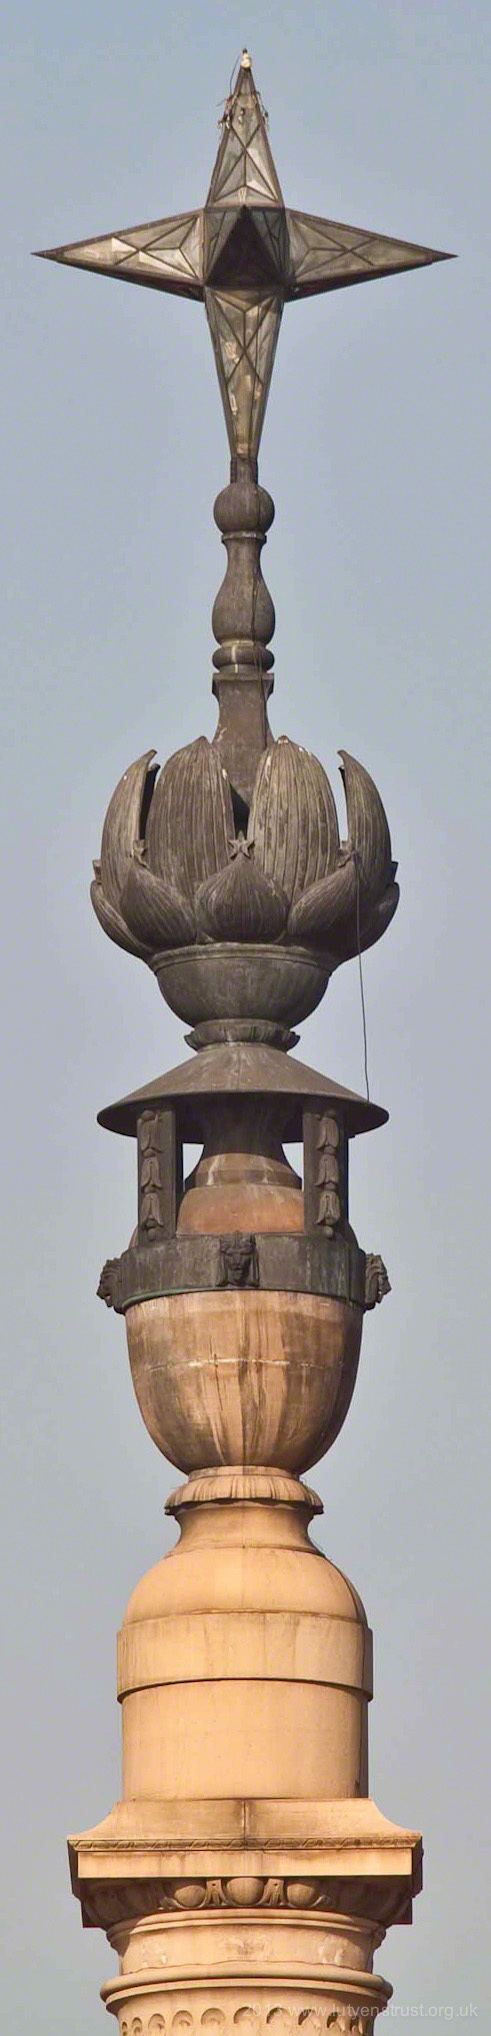 Jaipur Column Ten Years On Lutyens Exhibition Rashtrapati Bhavan amp the Jaipur Column